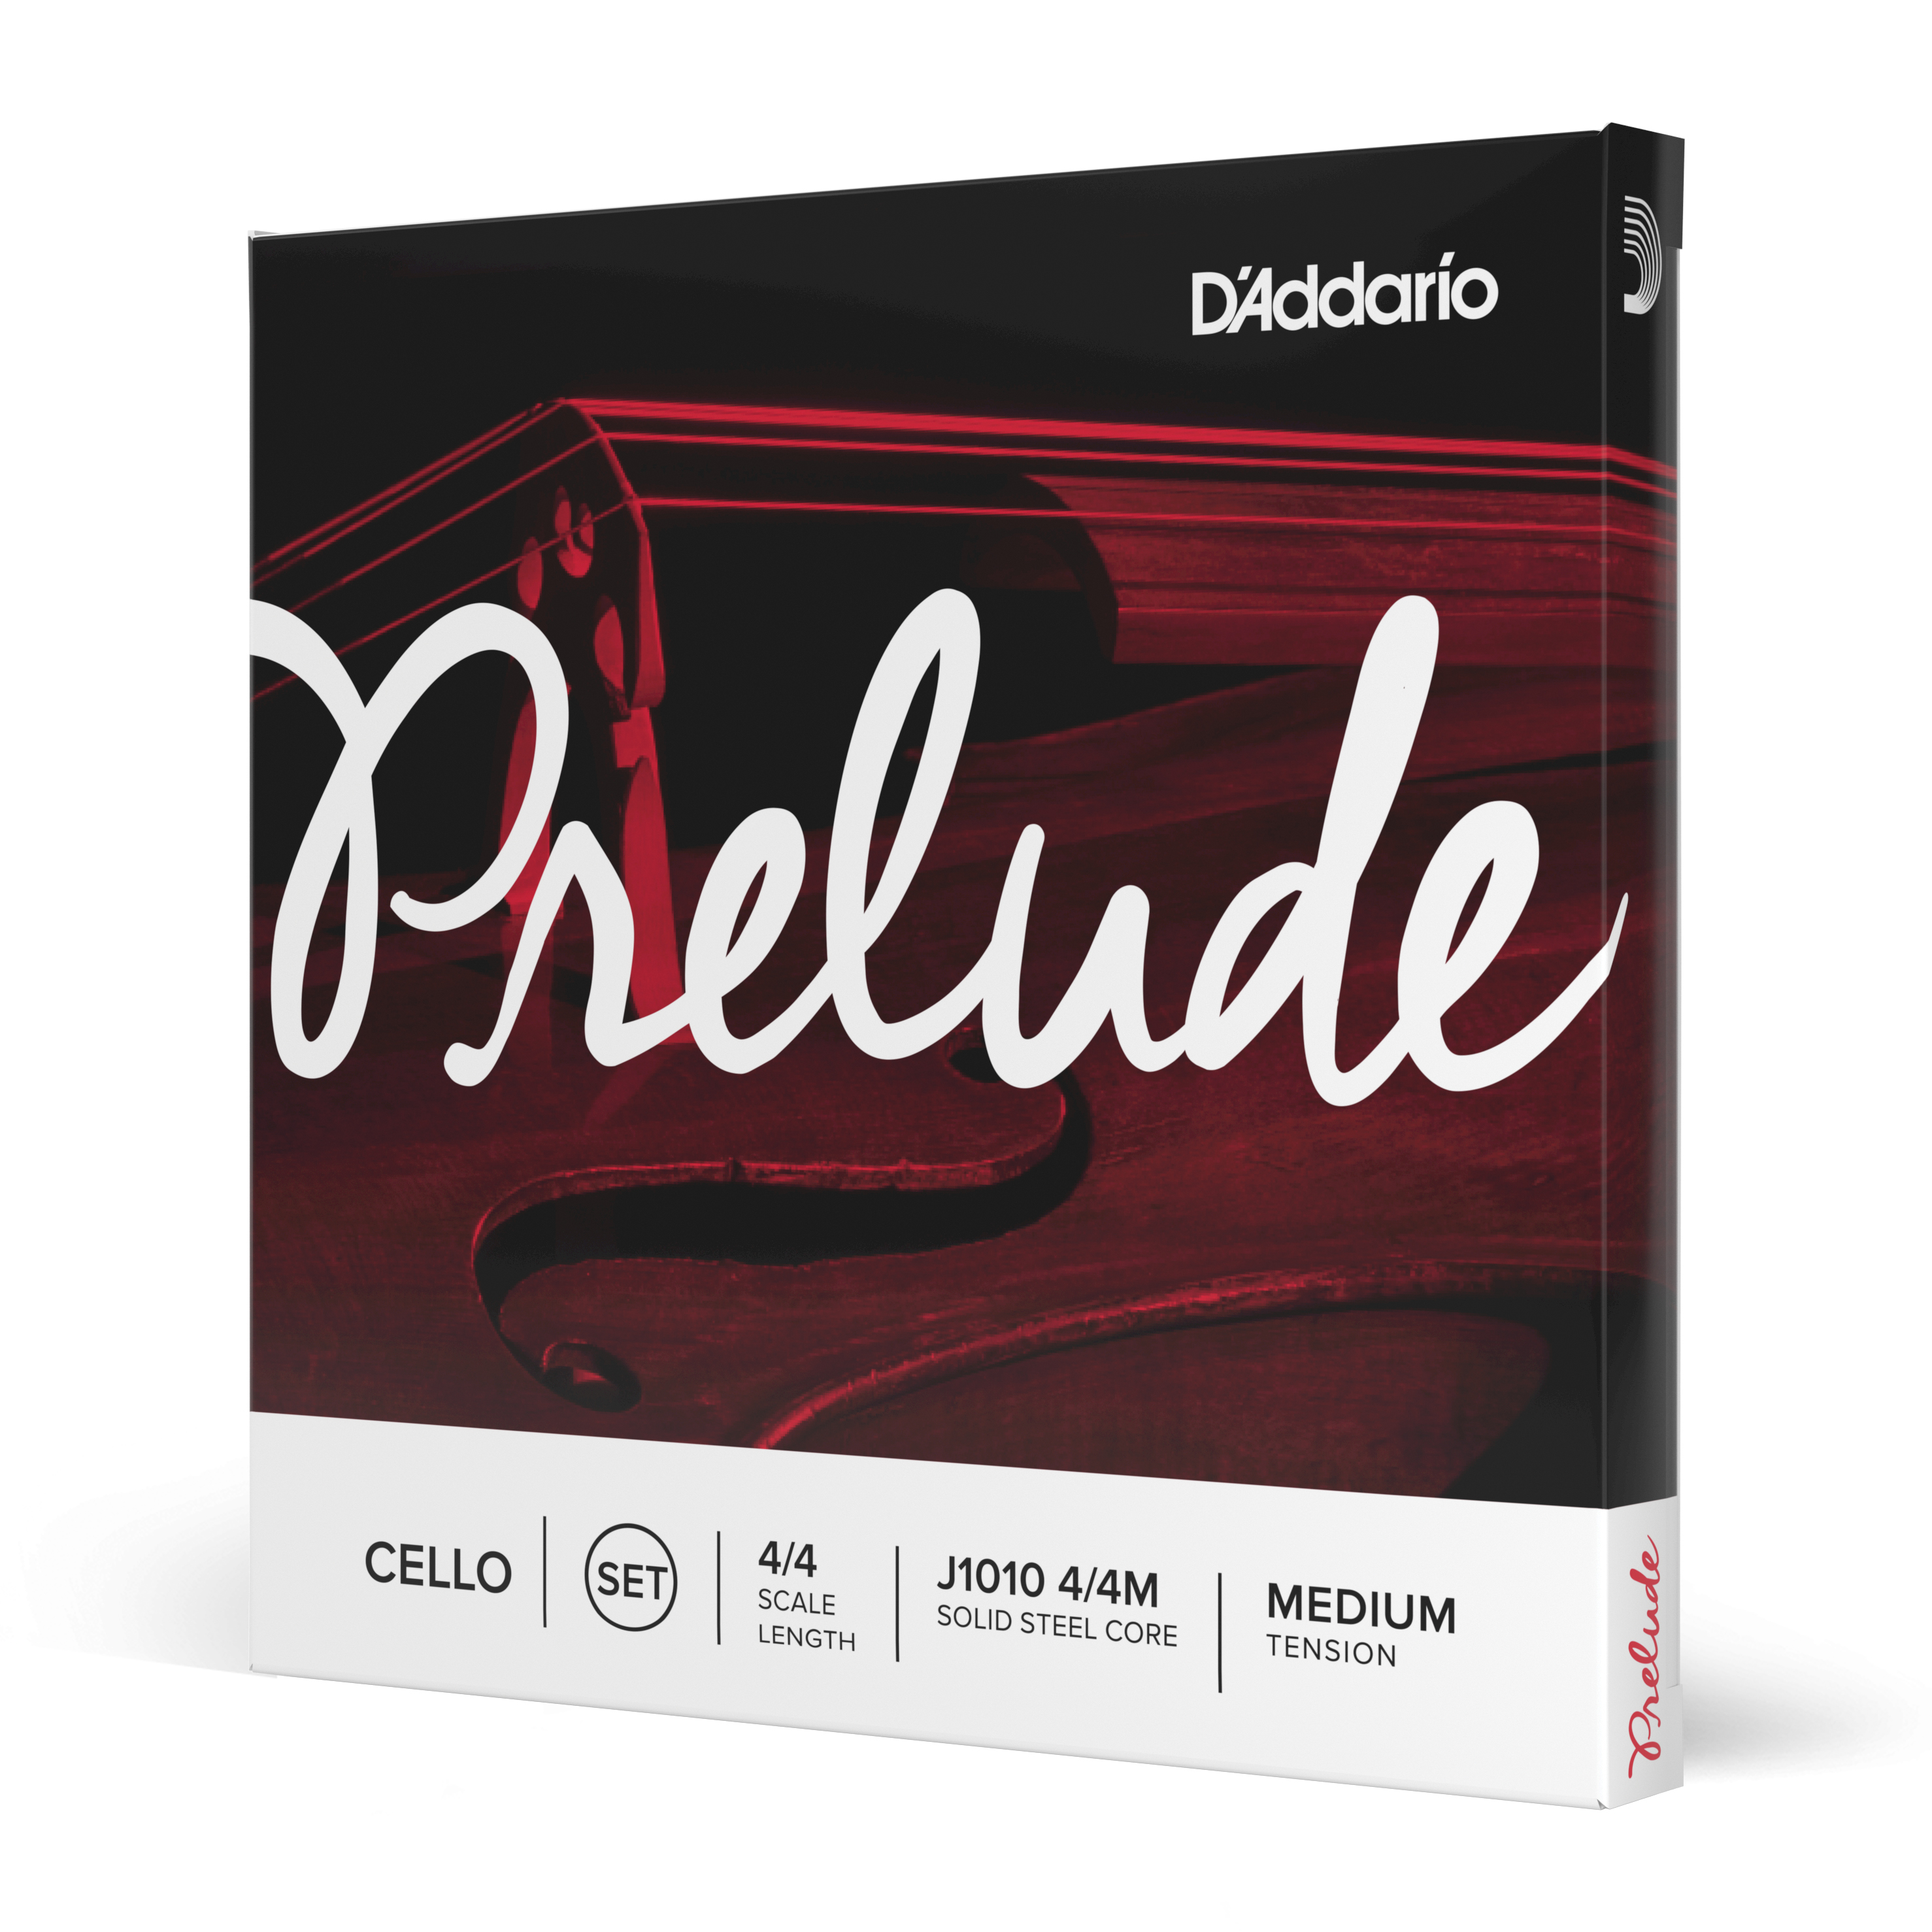 Daddario orchestral it J1010 4/4m set di corde d'addario prelude per violoncello, scala 4/4, tensione media